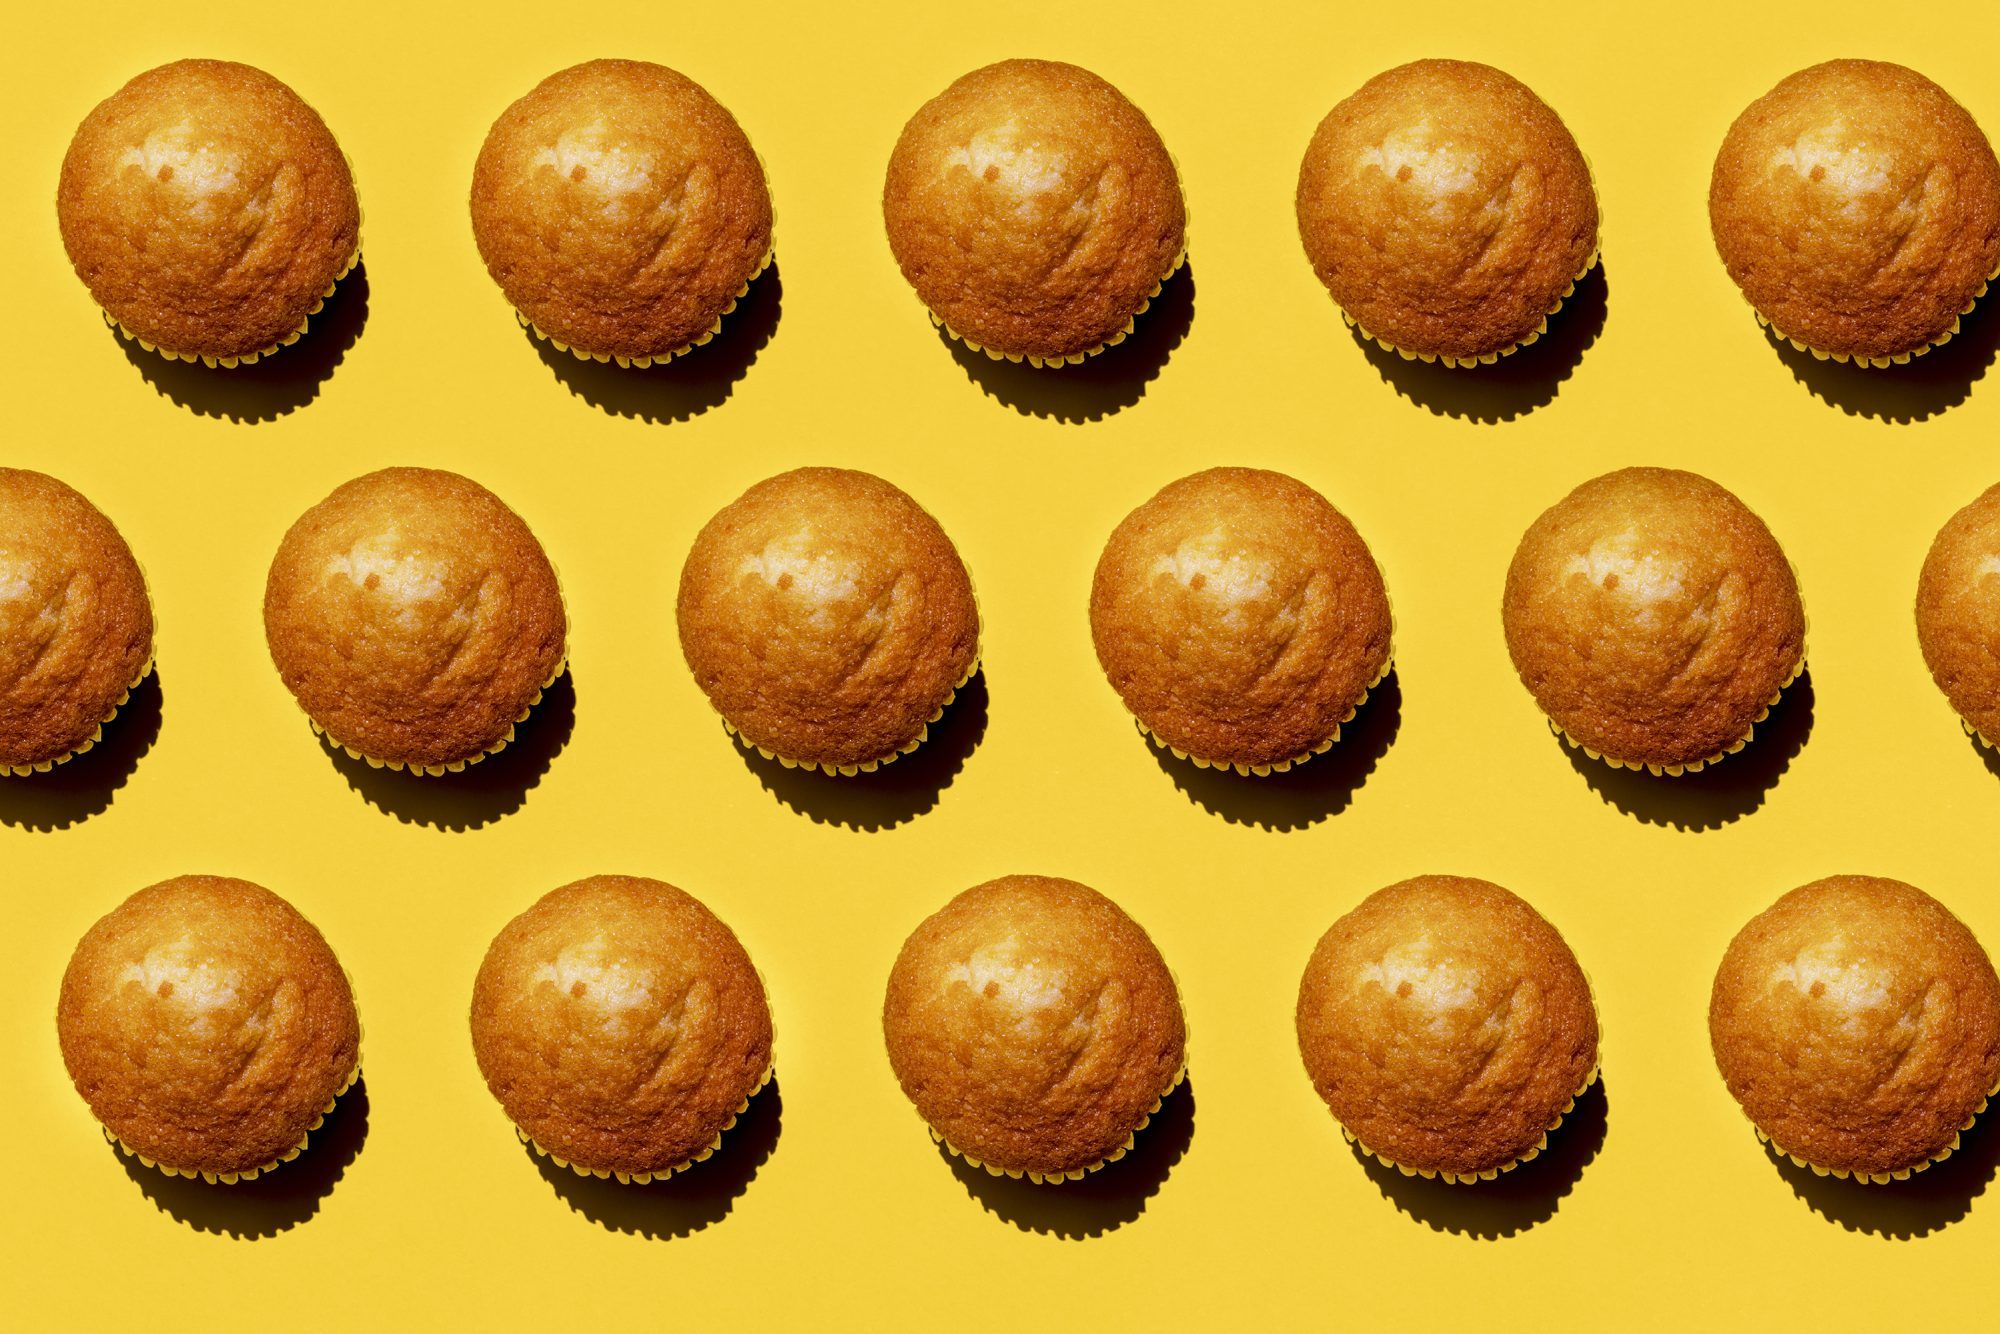 Patroon van rijen muffins tegen gele achtergrond